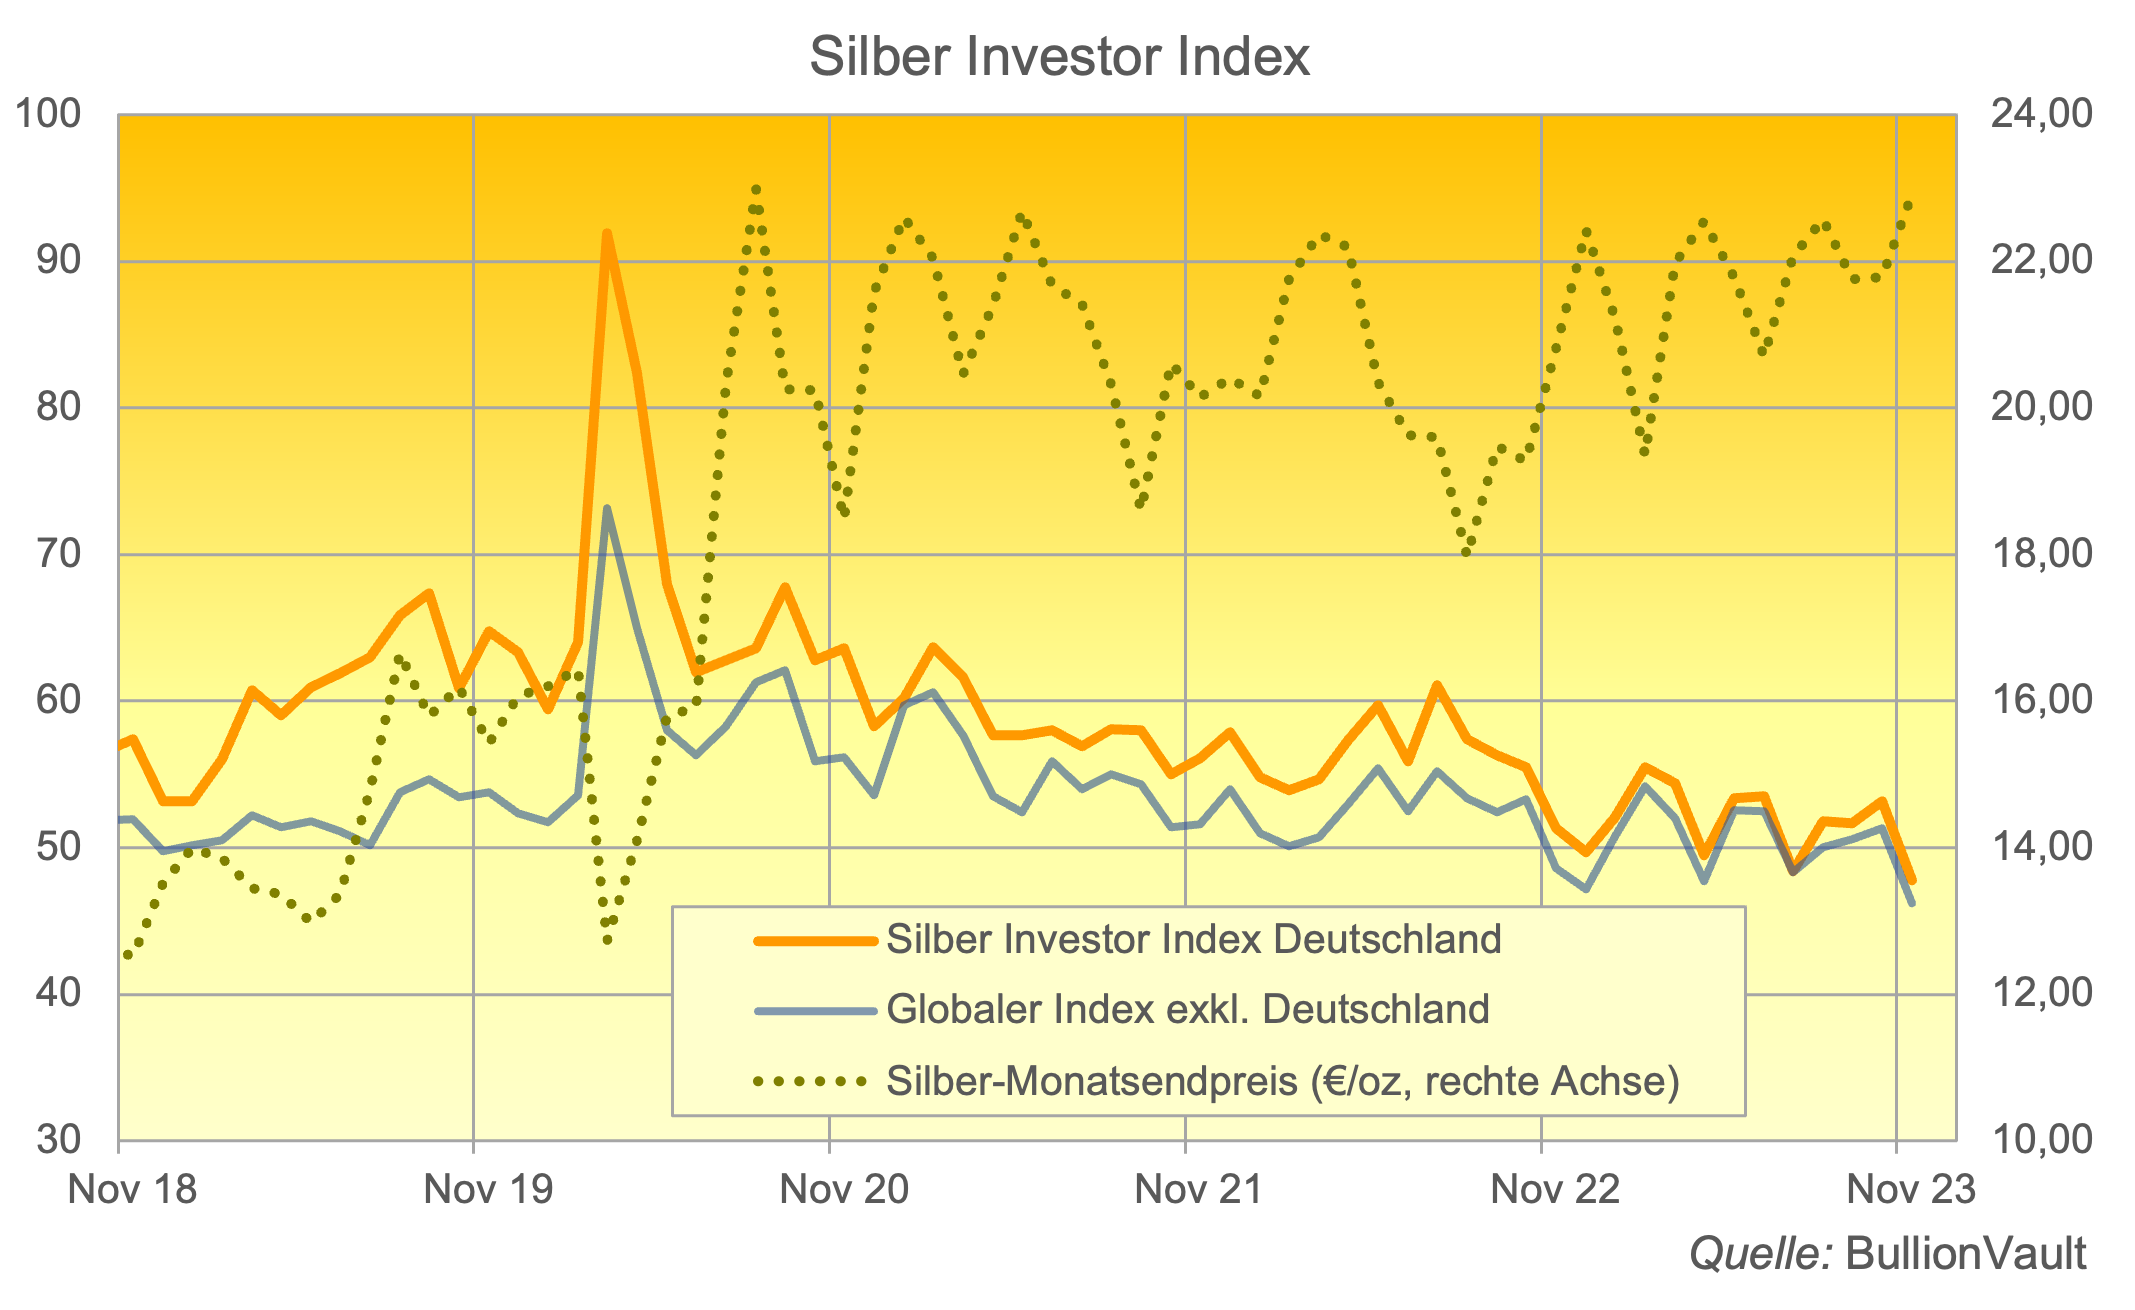 Silber-Investor-Index Deutschland November 2023 Quelle: Bullionvault